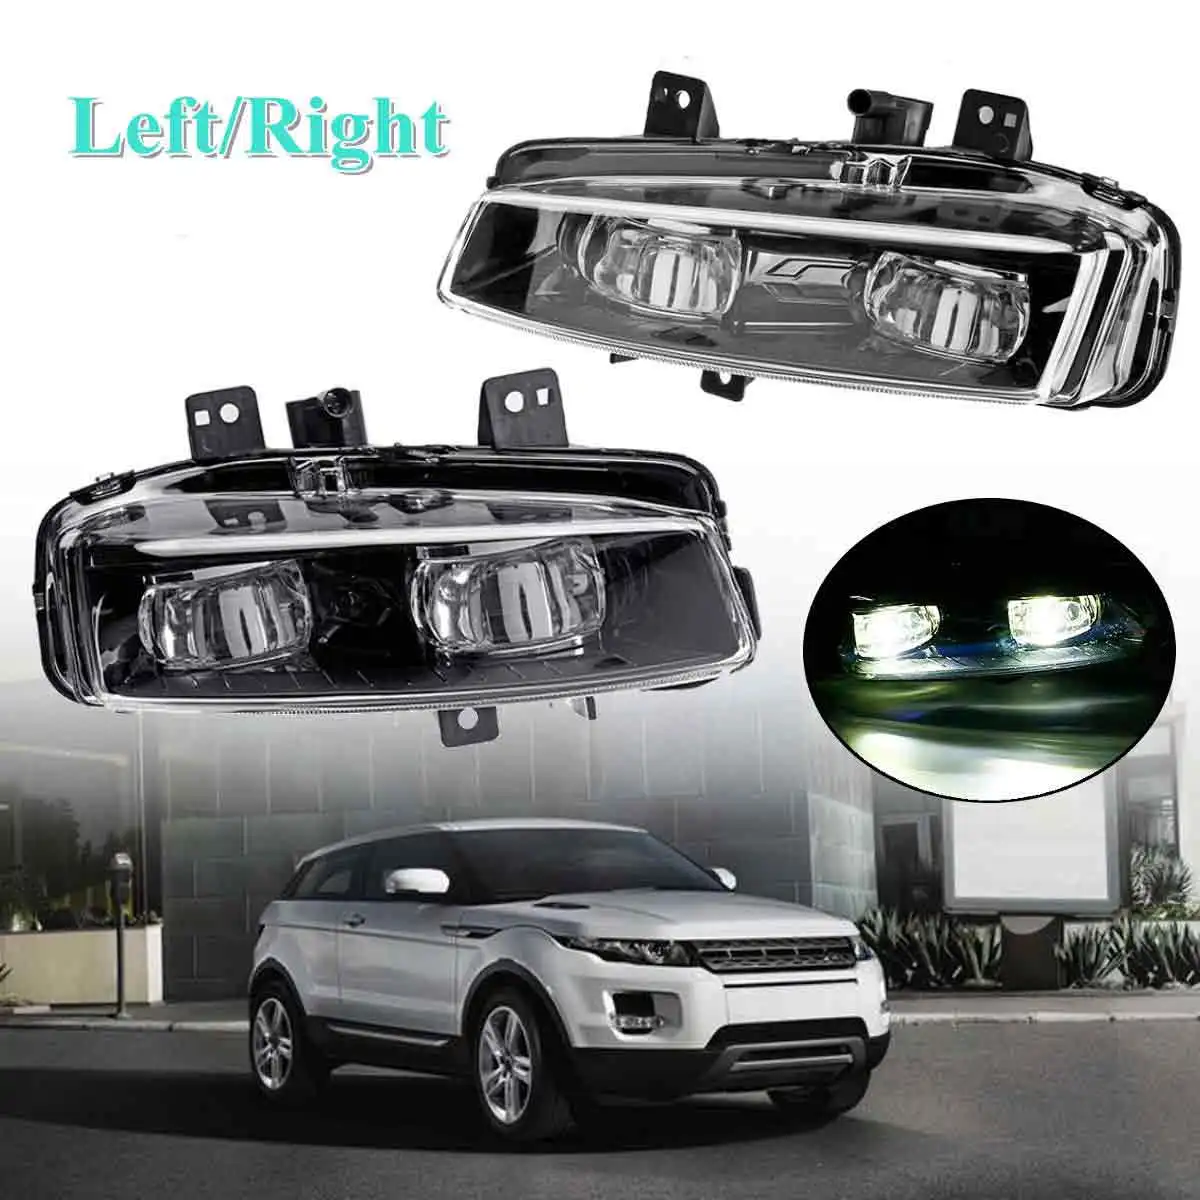 12 В левый/правый противотуманный светильник для Range Rover Evoque Dynamic 2011 2012 2013 автомобильный передний бампер противотуманный светильник s лампа - Цвет: Pair black